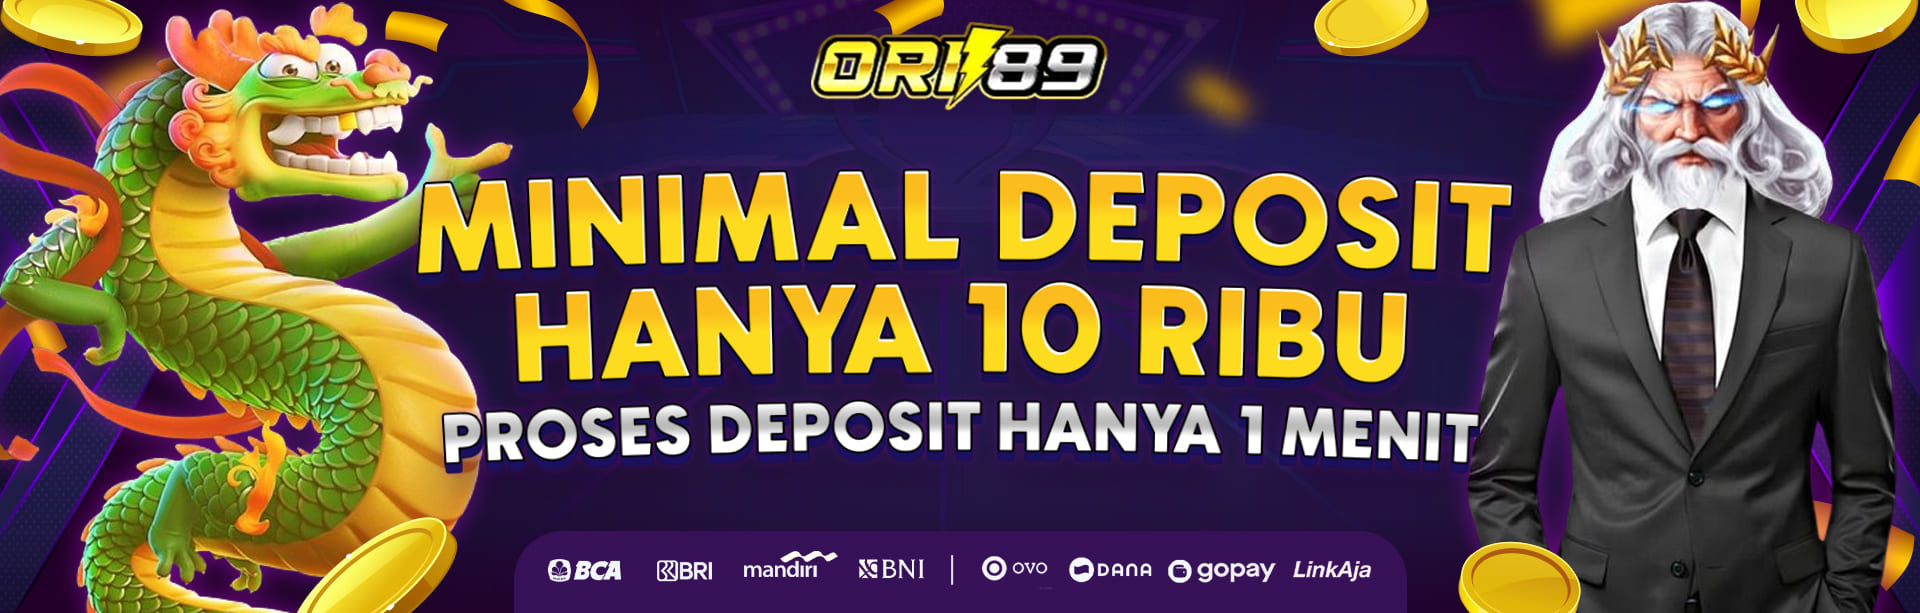 Minimal Deposit 10 Ribu ORI89